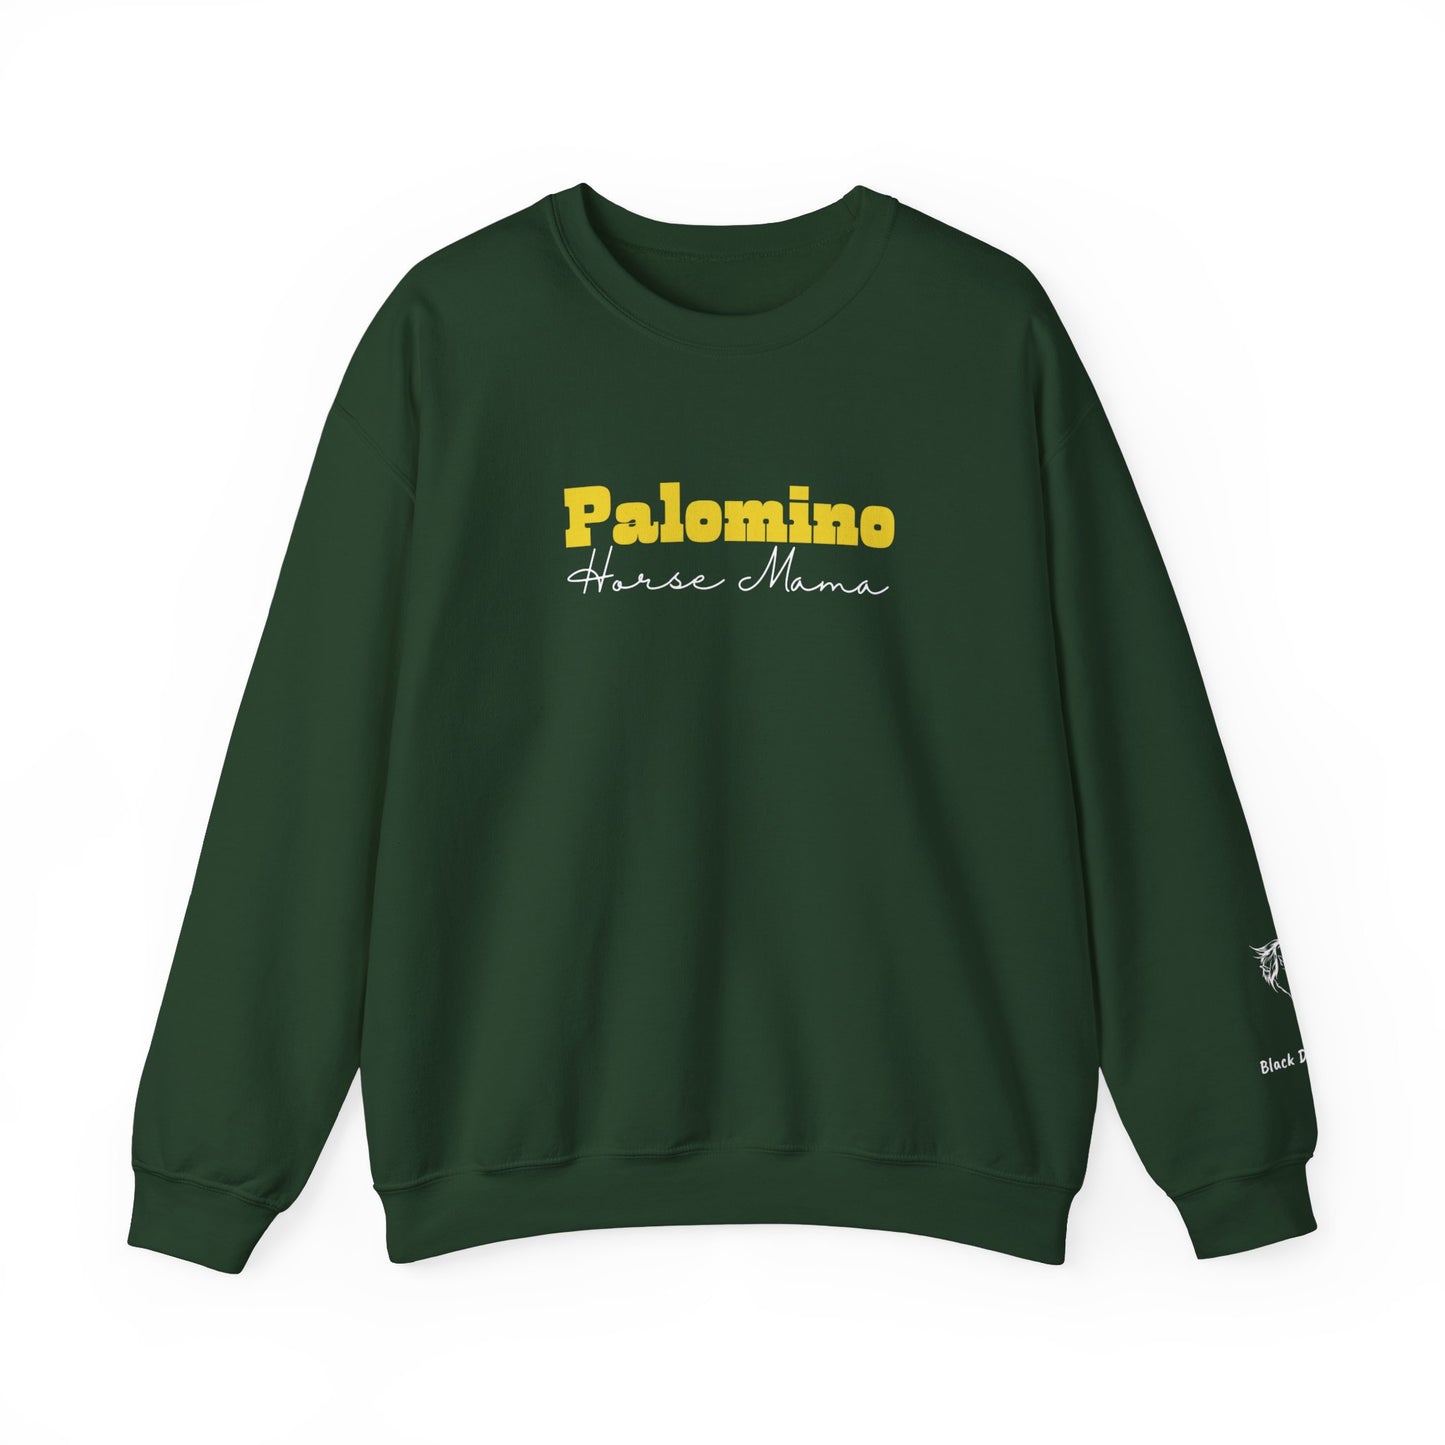 Personalized Palomino Horse Mama Sweatshirt with Horse Name on Sleeve